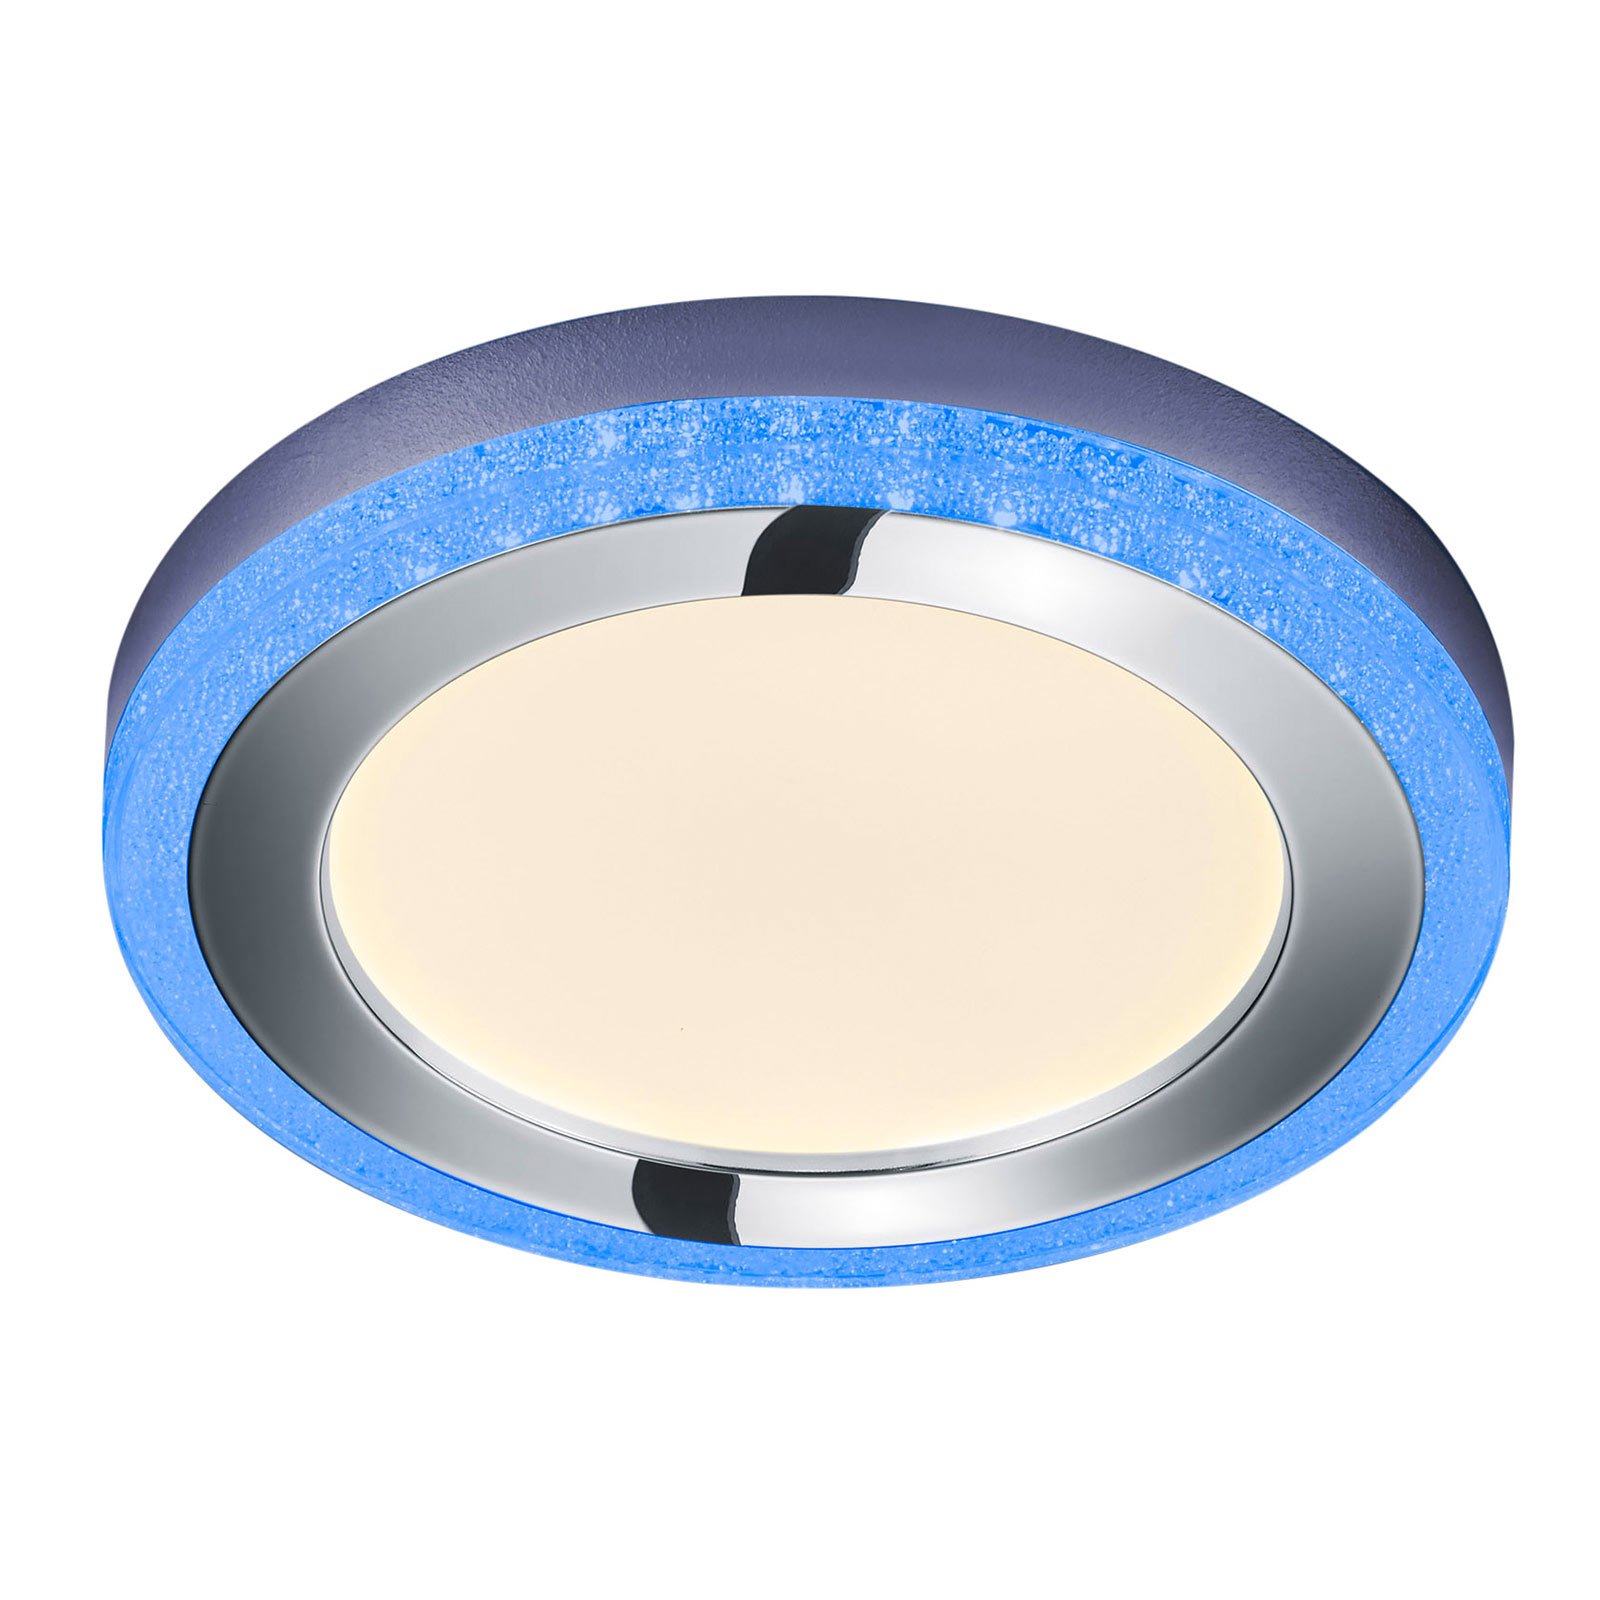 LED-kattovalaisin Slide, valkoinen, pyöreä, Ø 40cm